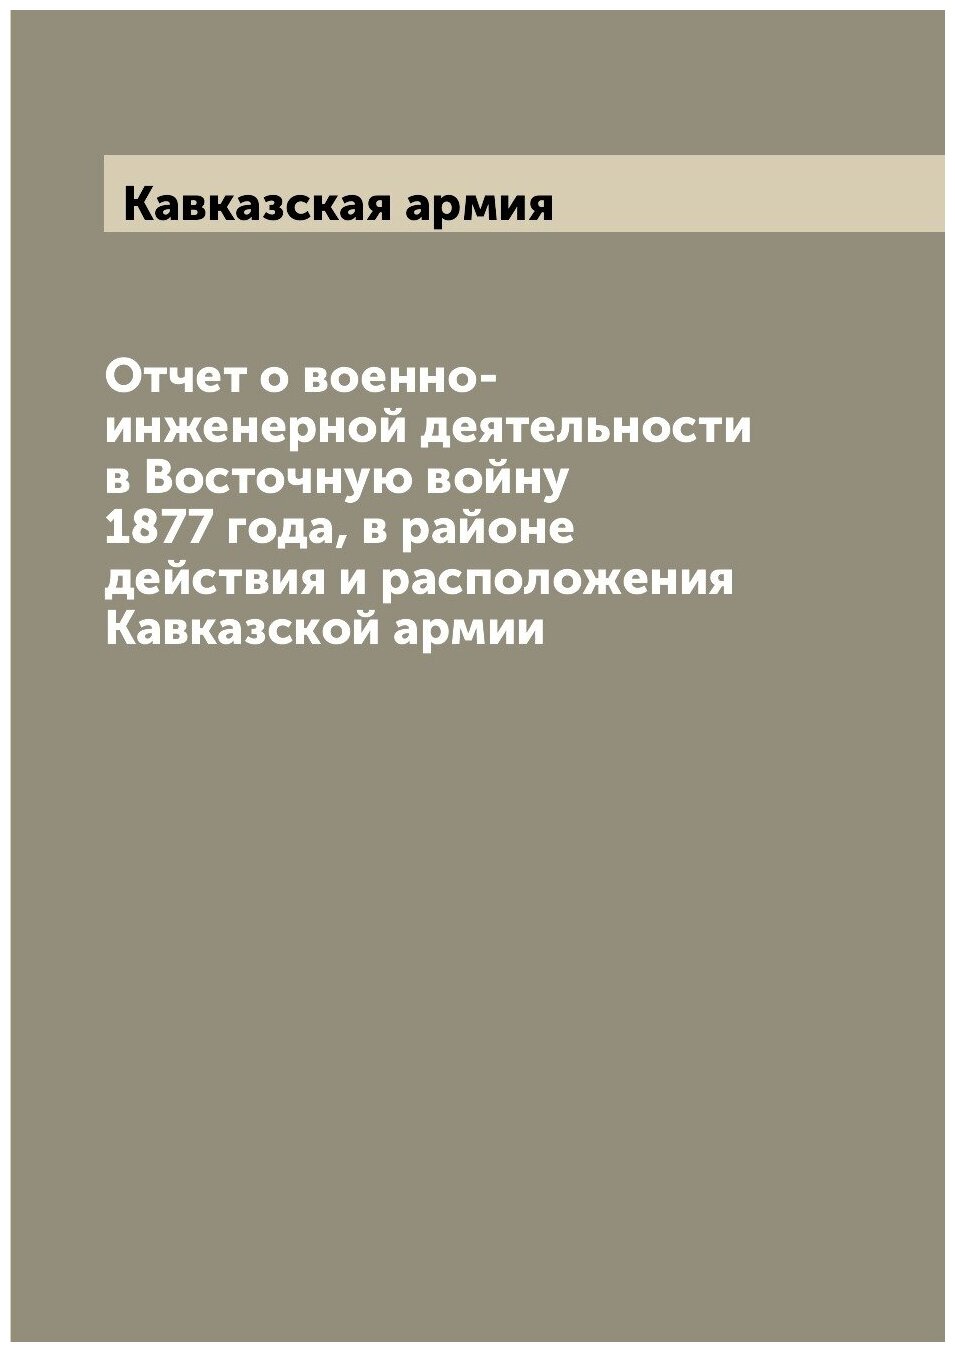 Отчет о военно-инженерной деятельности в Восточную войну 1877 года, в районе действия и расположения Кавказской армии